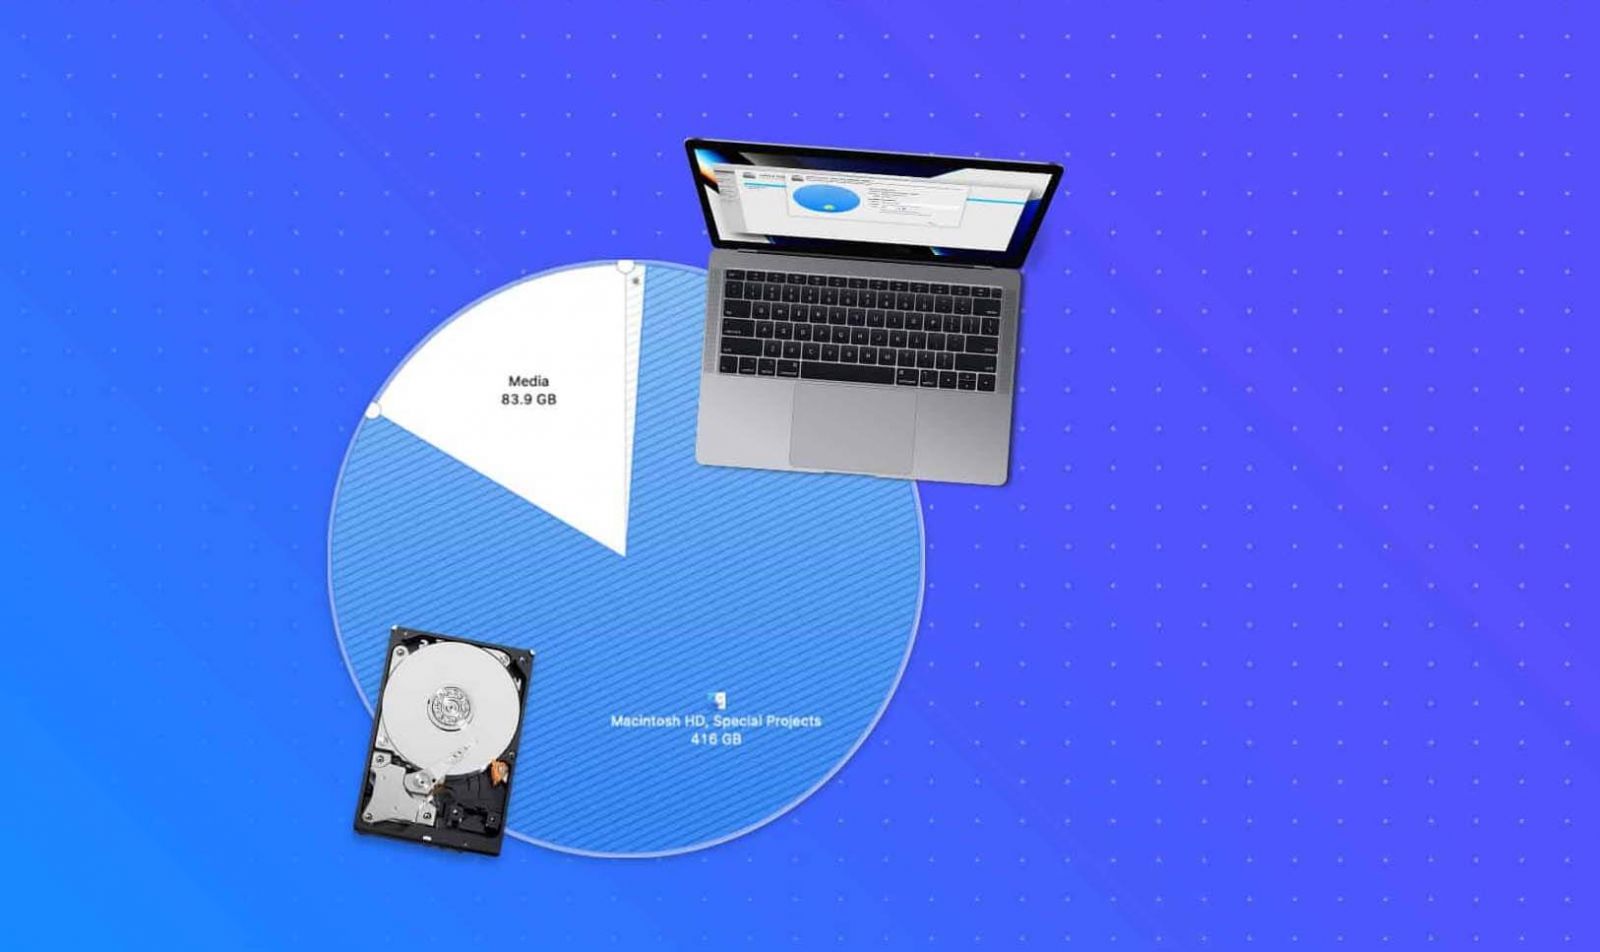 create new disk volume on Mac